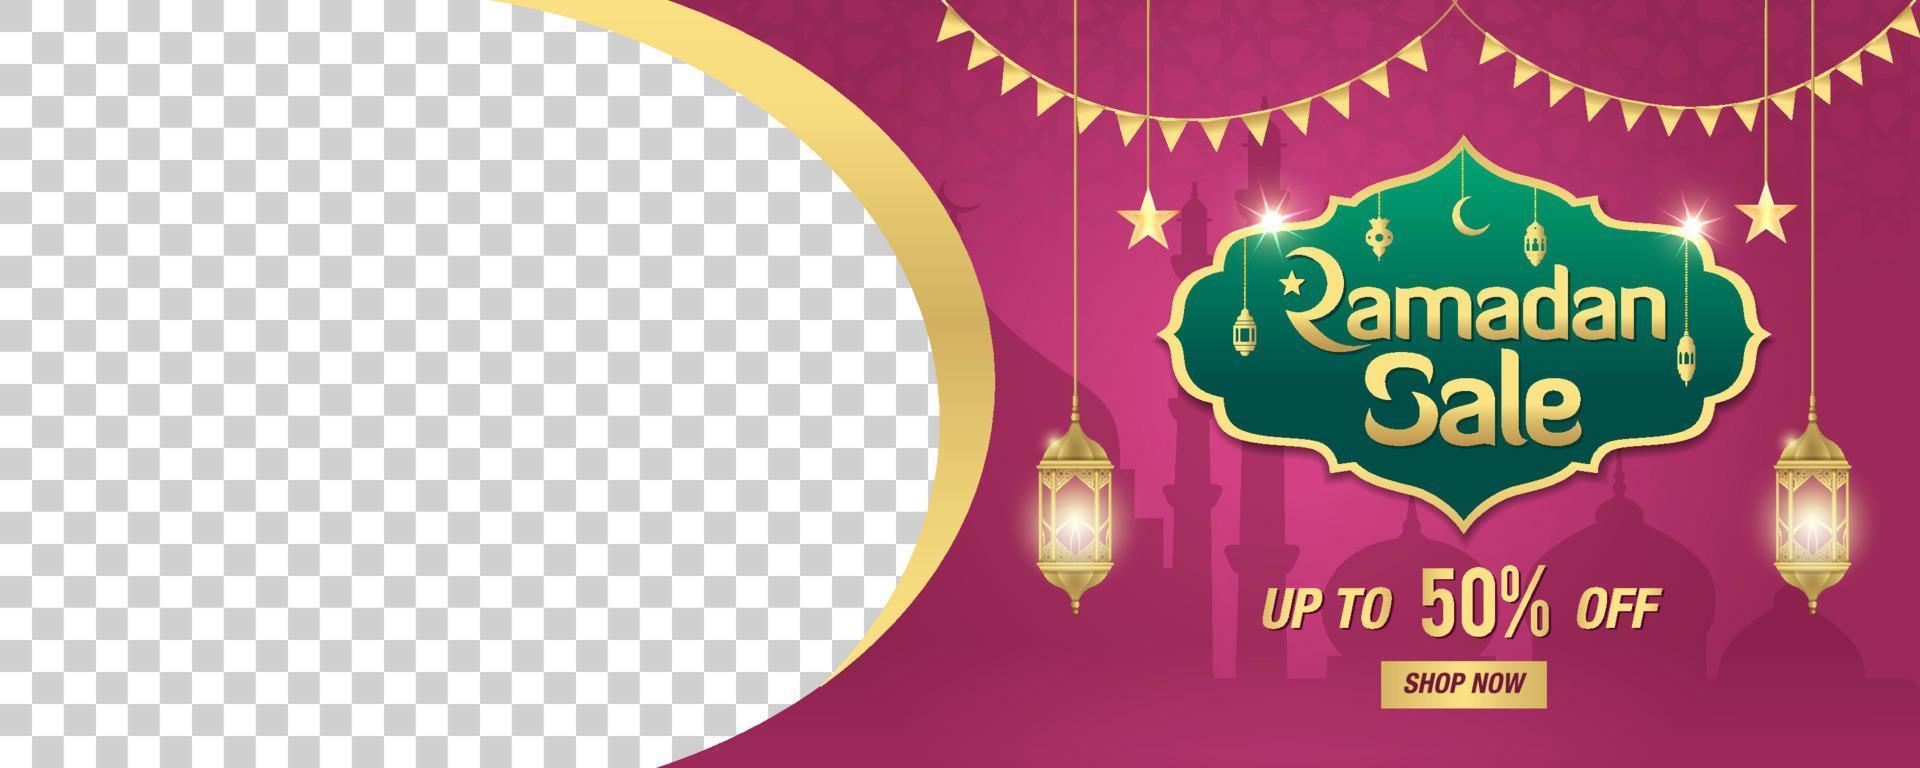 ramadan-rea, webbhuvud eller bannerdesign med gyllene glänsande ram, arabiska lyktor och utrymme för bild vektor